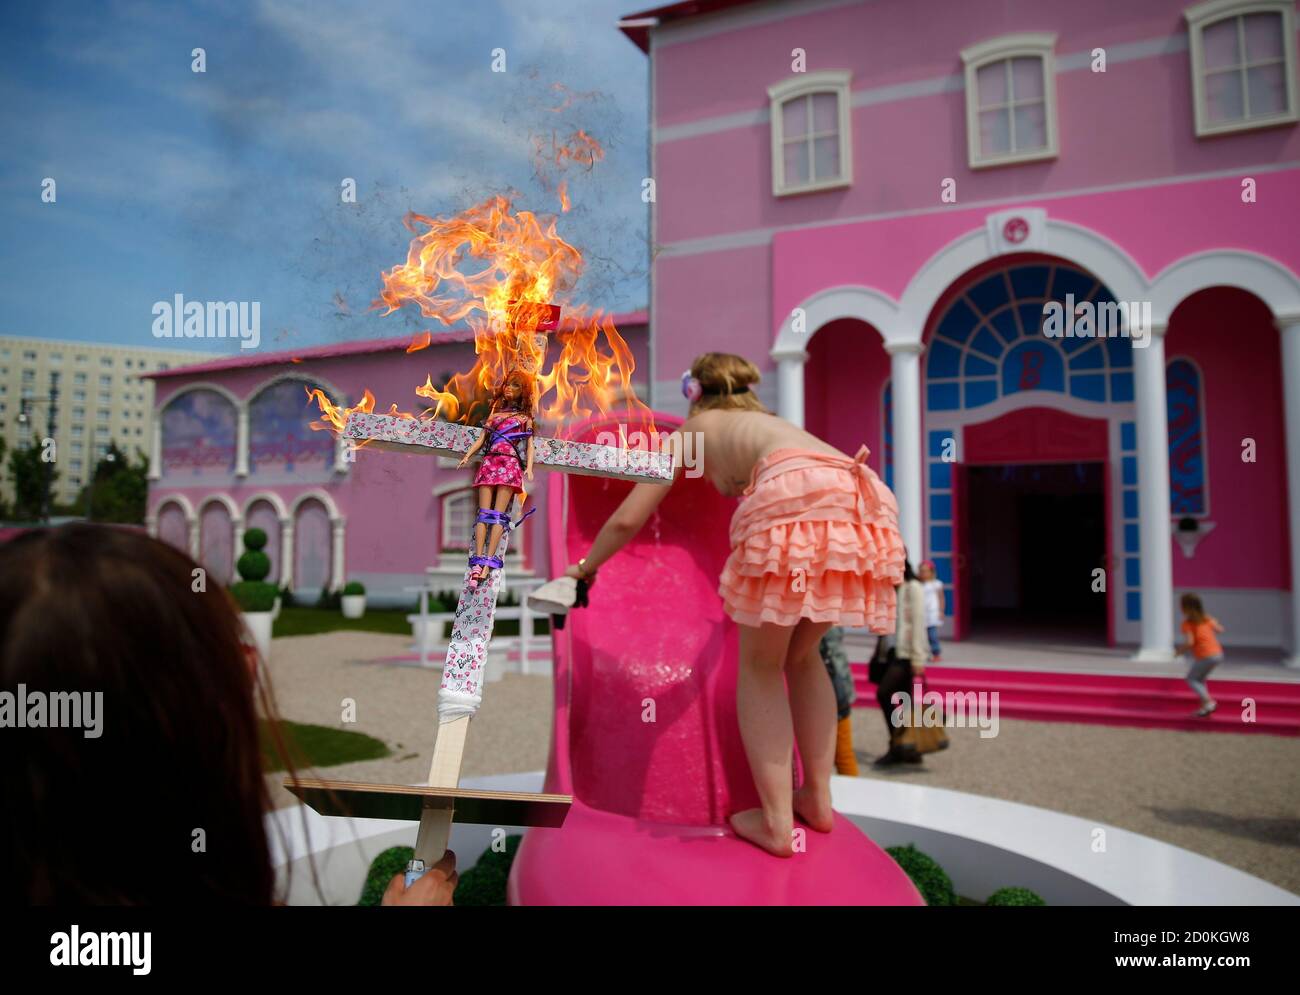 Les activistes du groupe de défense des droits des femmes Femen brûlent une  poupée de barbie sur une croix alors qu'ils protestent à l'extérieur d'une  « maison de rêve Barbie » de